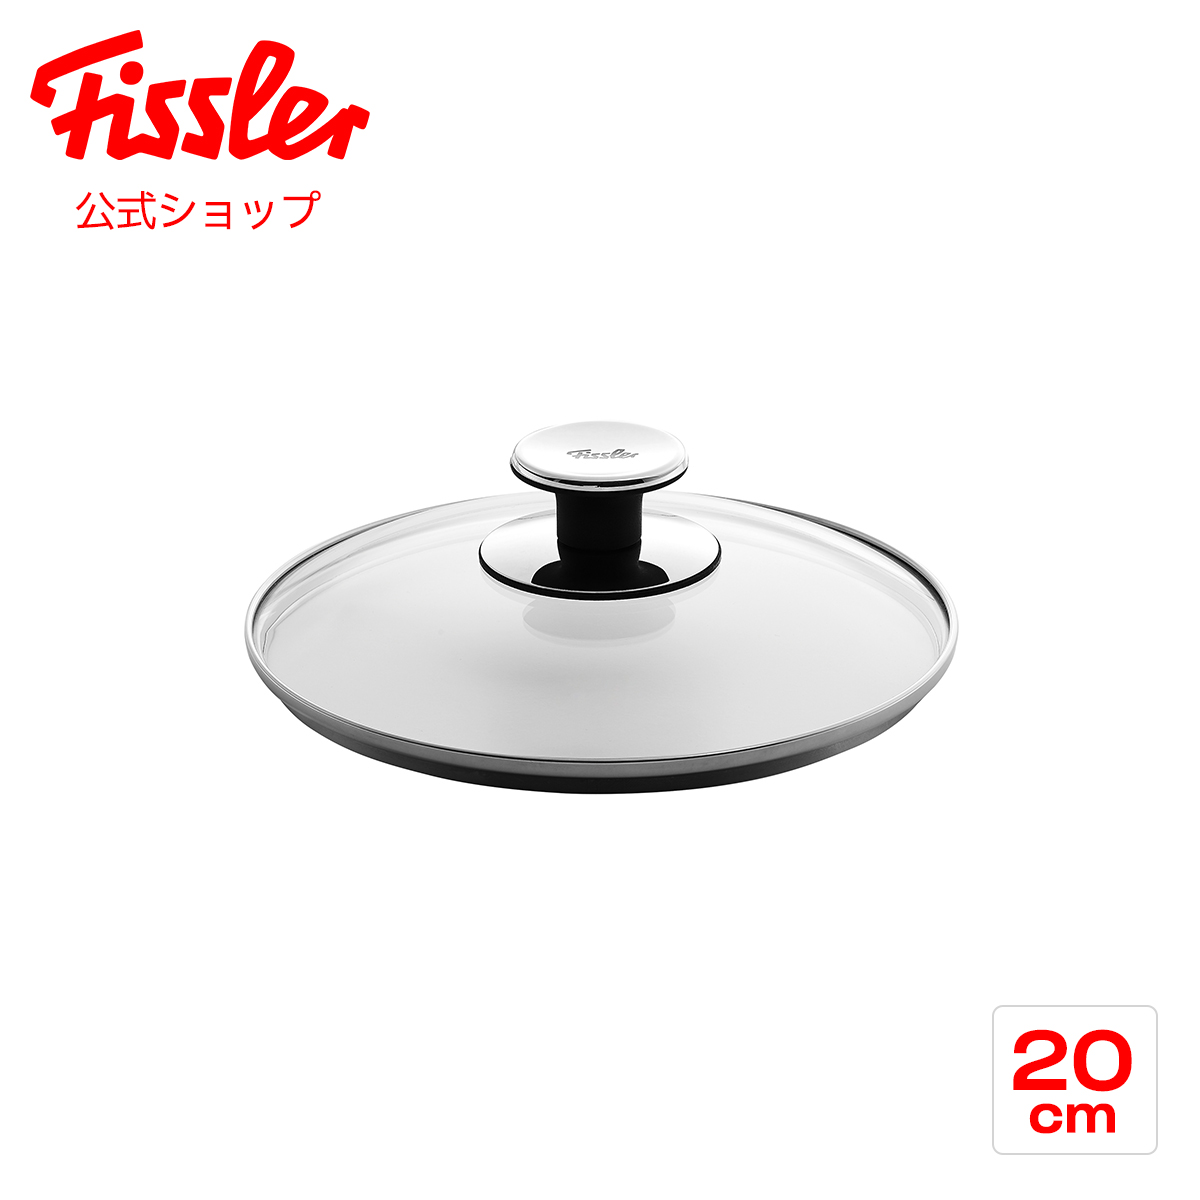  フィスラー ガラスフタ 20cm Fissler メーカー公式 硝子製 鍋用 フライパン用 蓋 001-104-20-200